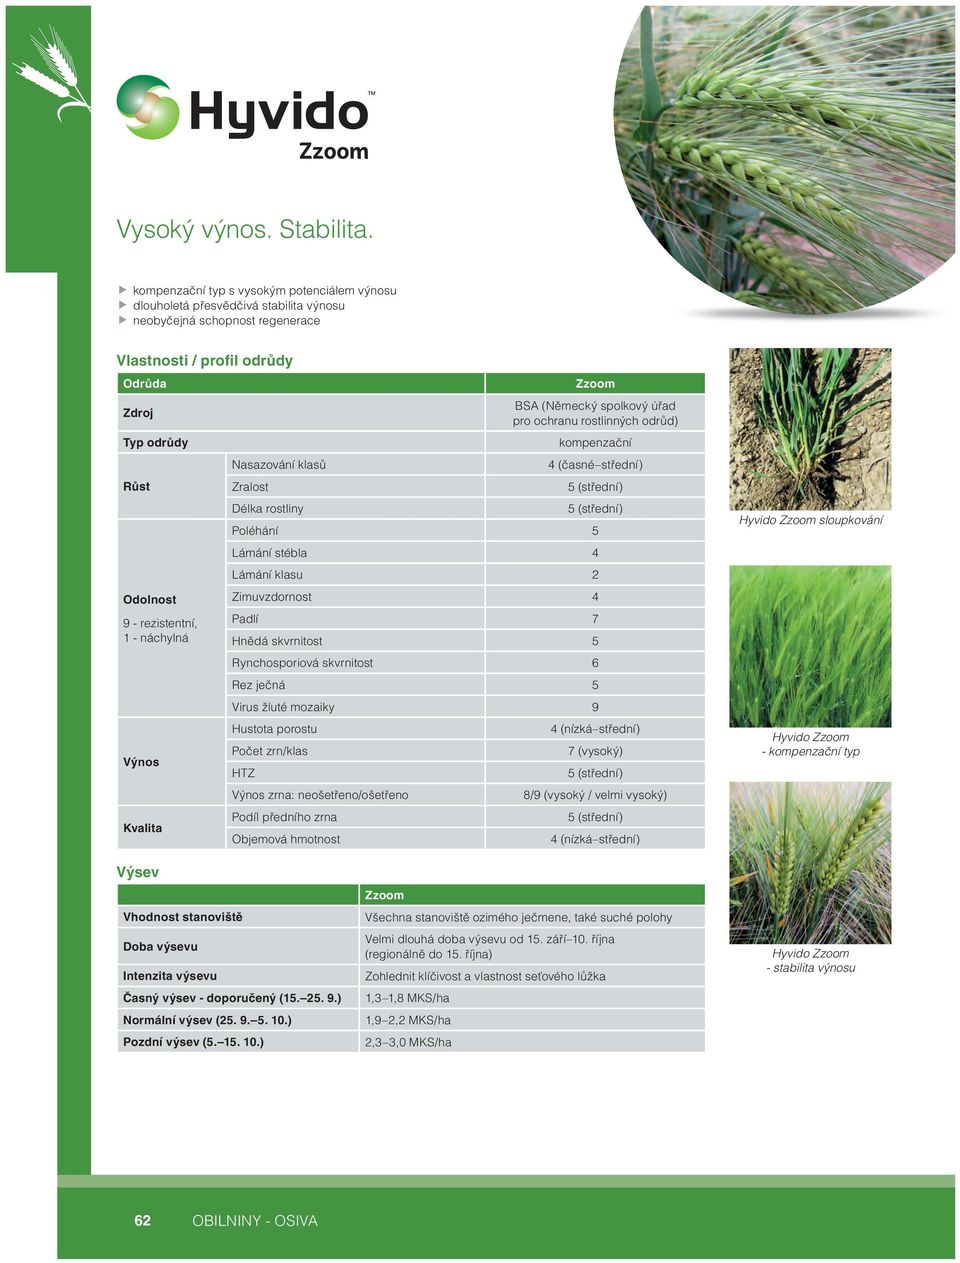 1 - náchylná Výnos Kvalita Nasazování klasů Zralost Délka rostliny Zzoom BSA (Německý spolkový úřad pro ochranu rostlinných odrůd) kompenzační 4 (časné střední) 5 (střední) 5 (střední) Poléhání 5